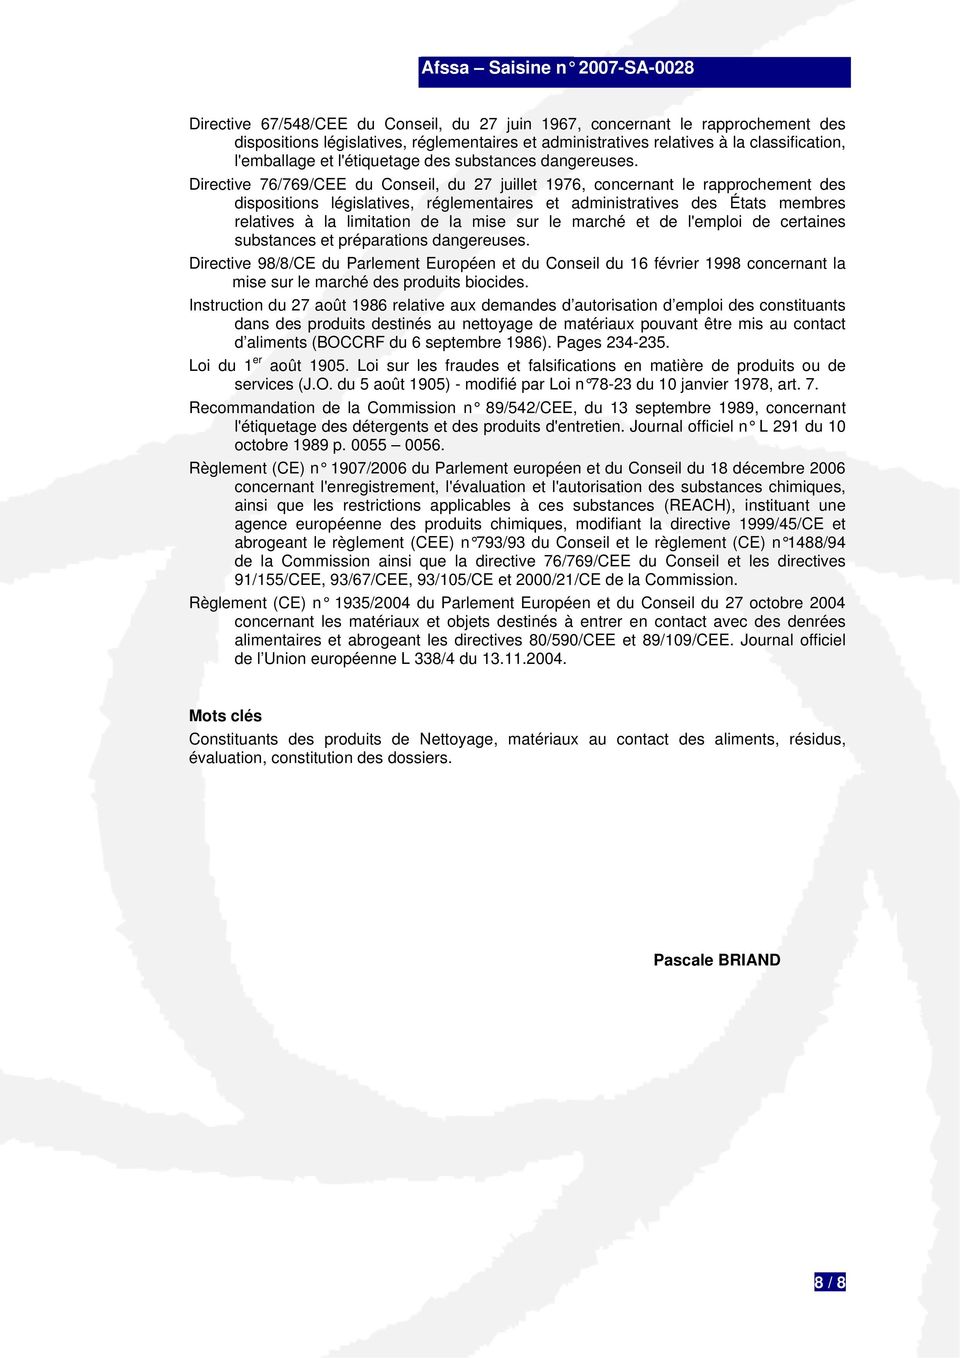 Directive 76/769/CEE du Conseil, du 27 juillet 1976, concernant le rapprochement des dispositions législatives, réglementaires et administratives des États membres relatives à la limitation de la